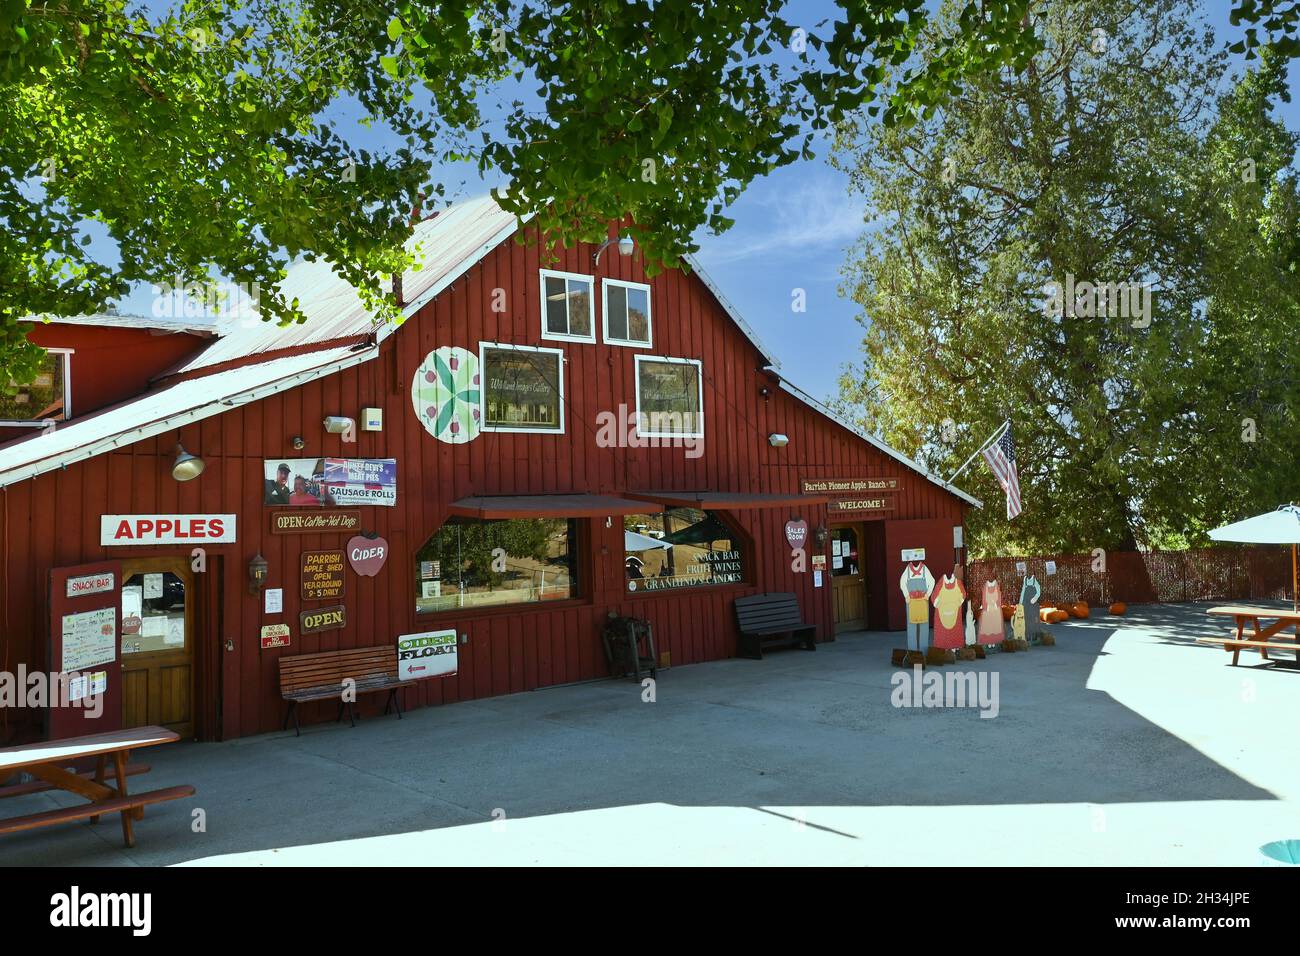 OAK GLEN, CALIFORNIE - 21 octobre 2021 : Parrish Pioneer Ranch offre pommes, beurre de pomme, cidre de pomme, comptoir de rafraîchissements, chocolats gastronomiques et friandises, Banque D'Images